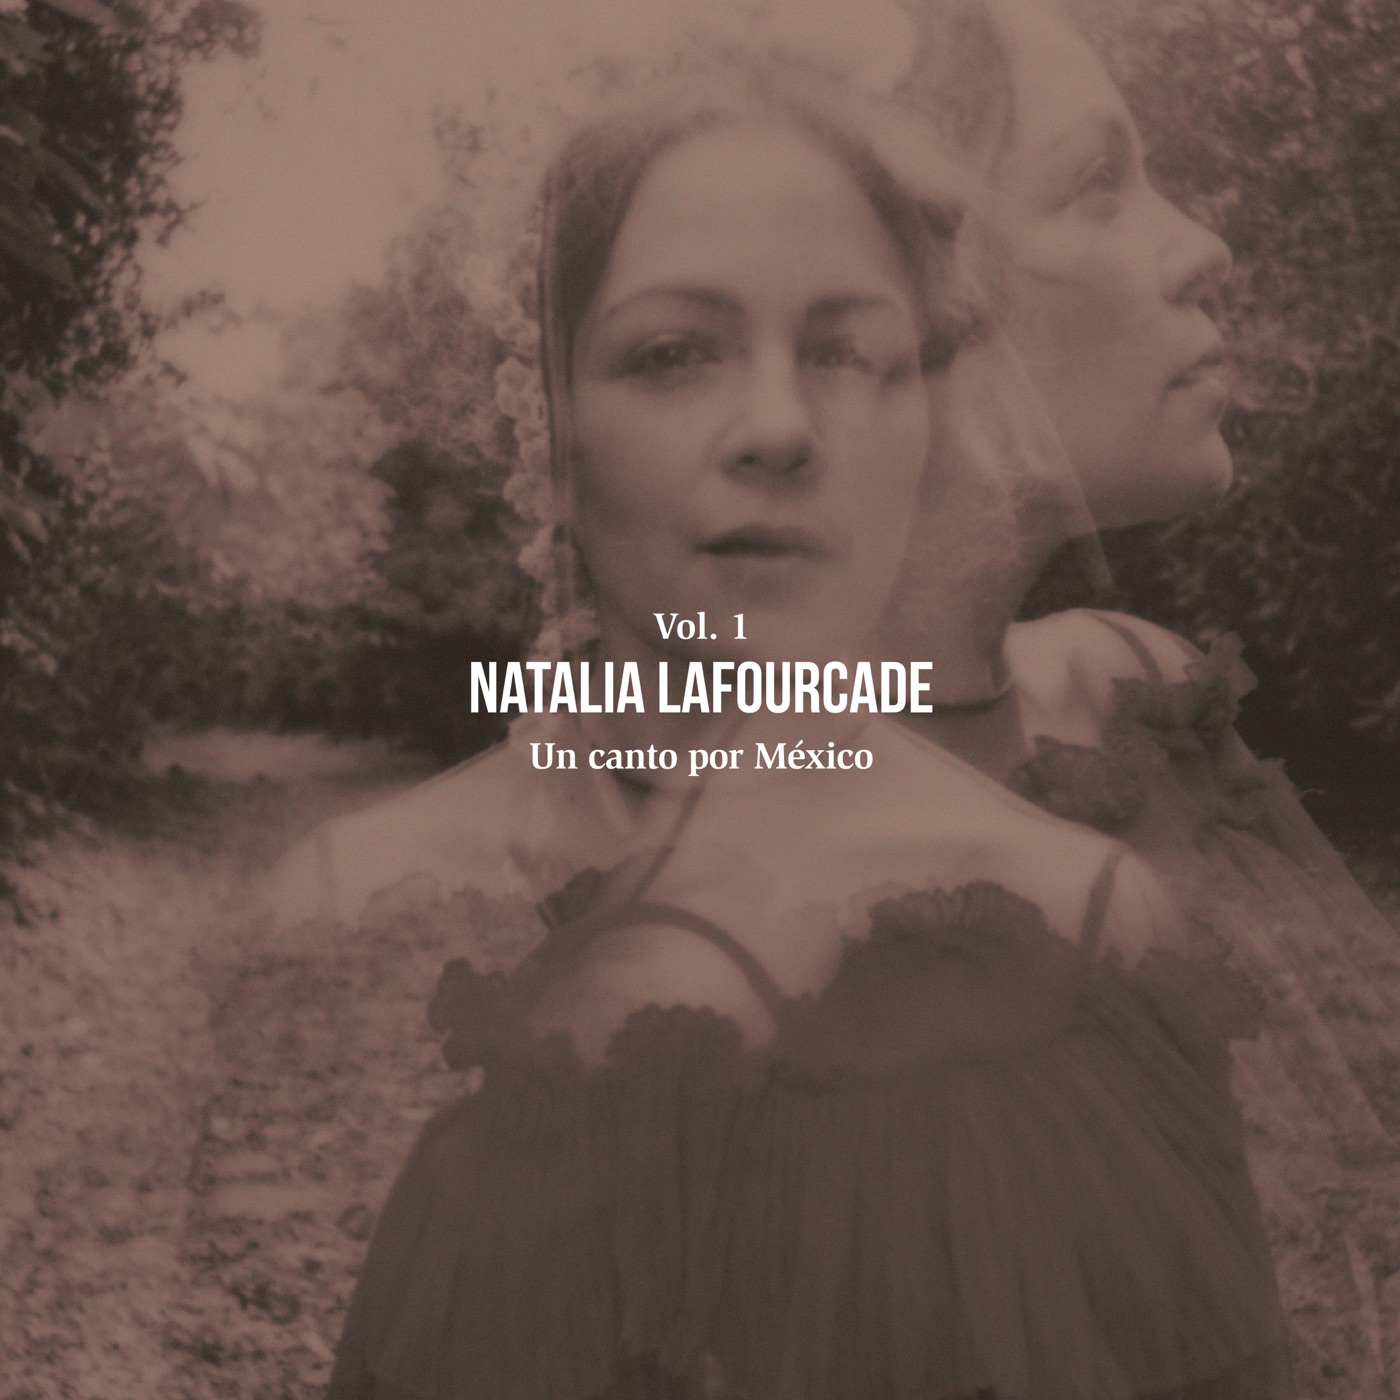 Un-Canto-Por-Mexico-Vol-1-Natalia-Lafourcade